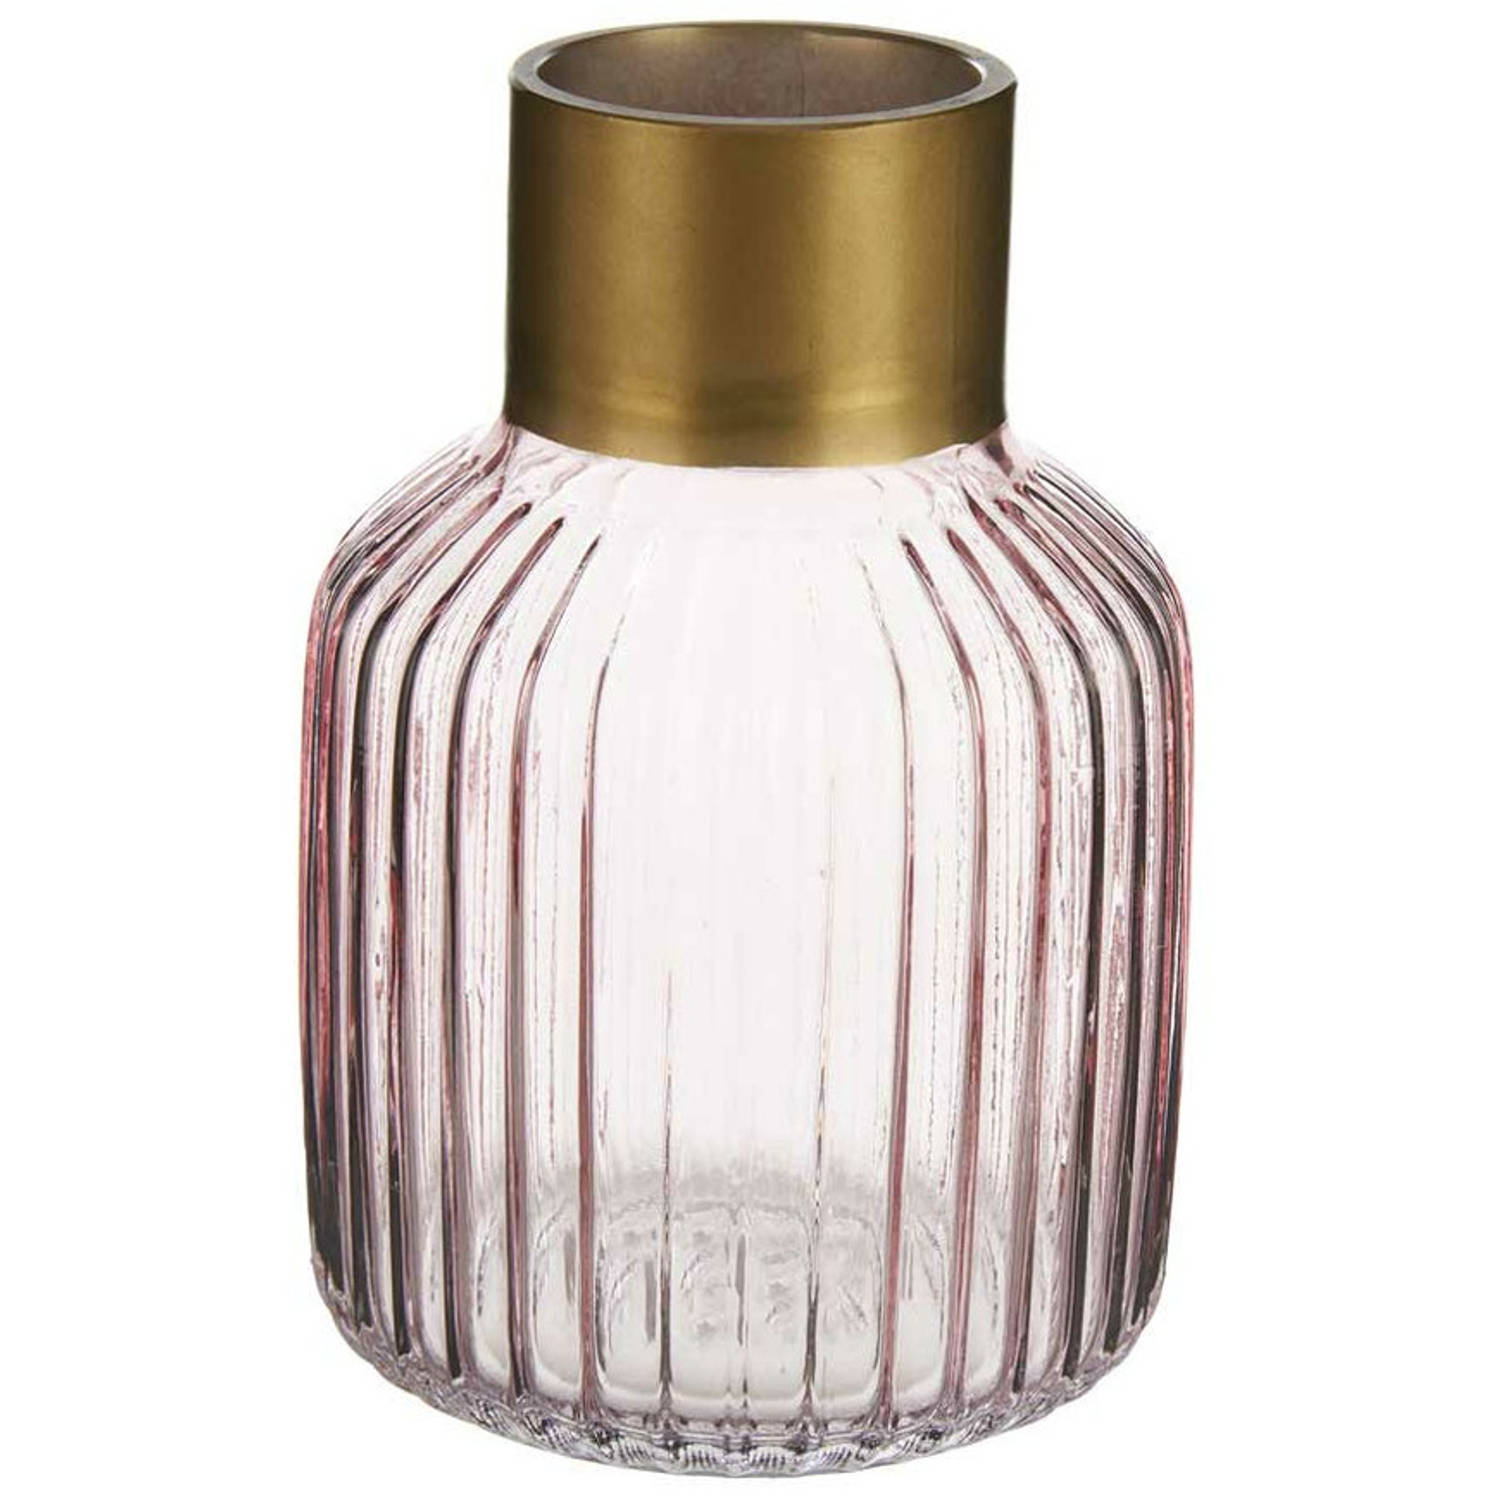 Bloemenvaas luxe decoratie glas roze transparant-goud 12 x 18 cm Vazen